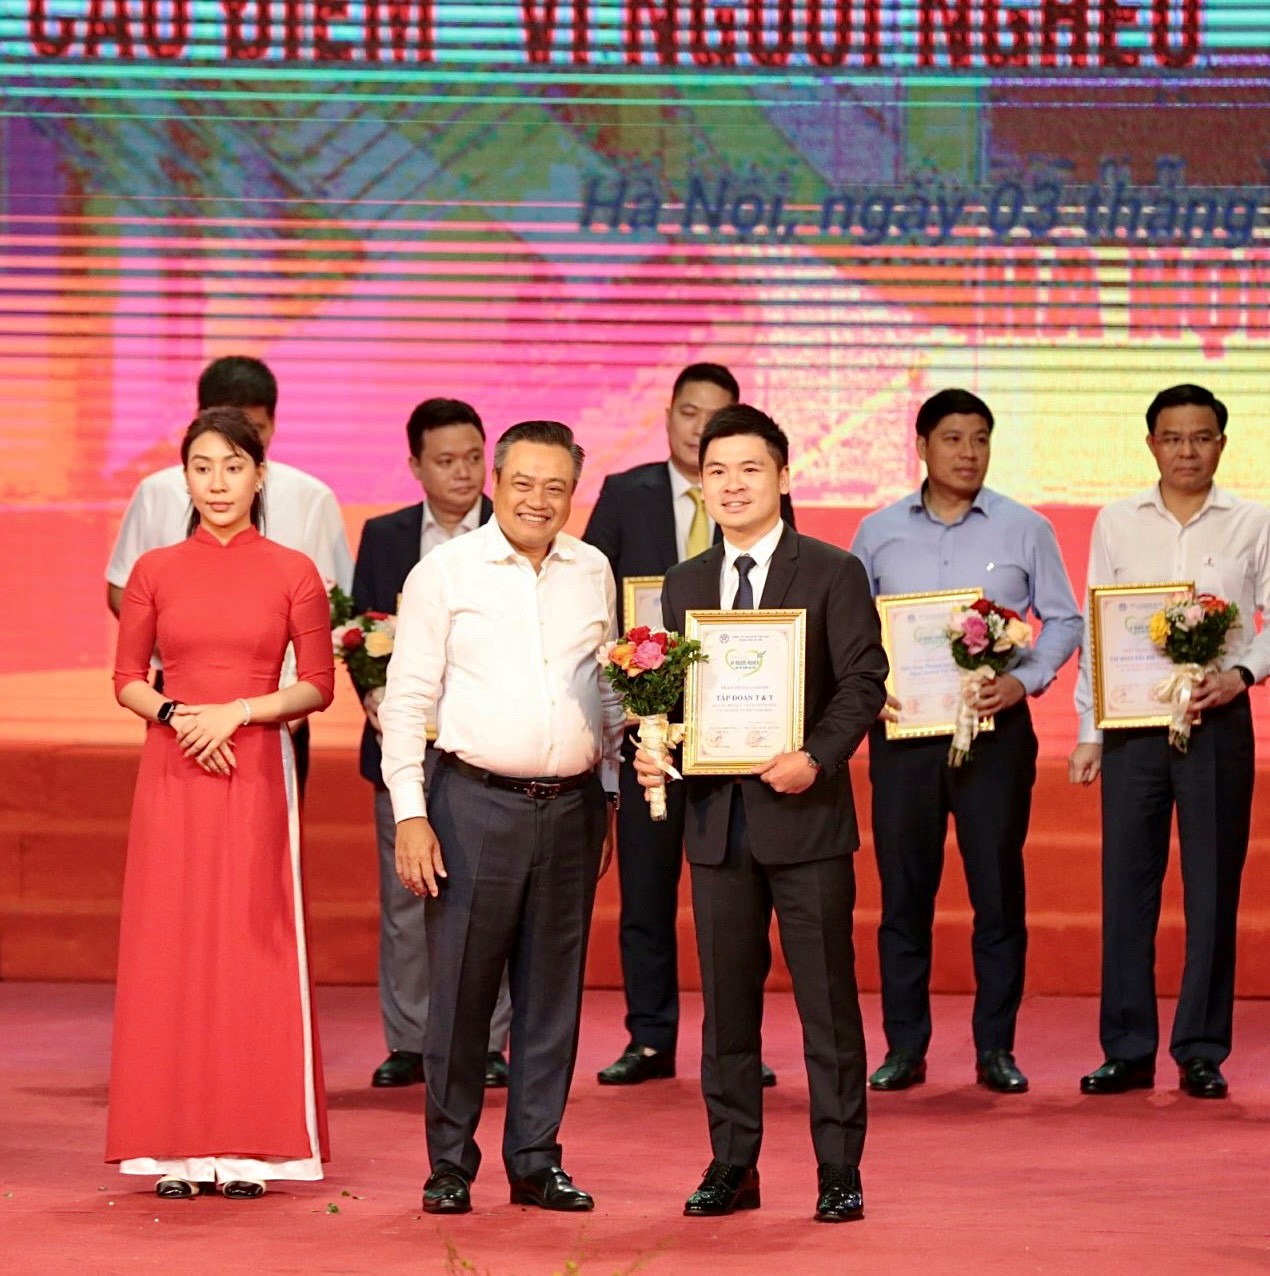 Kinh tế - T&T Group ủng hộ 1 tỷ đồng cho Quỹ “Vì người nghèo” thành phố Hà Nội